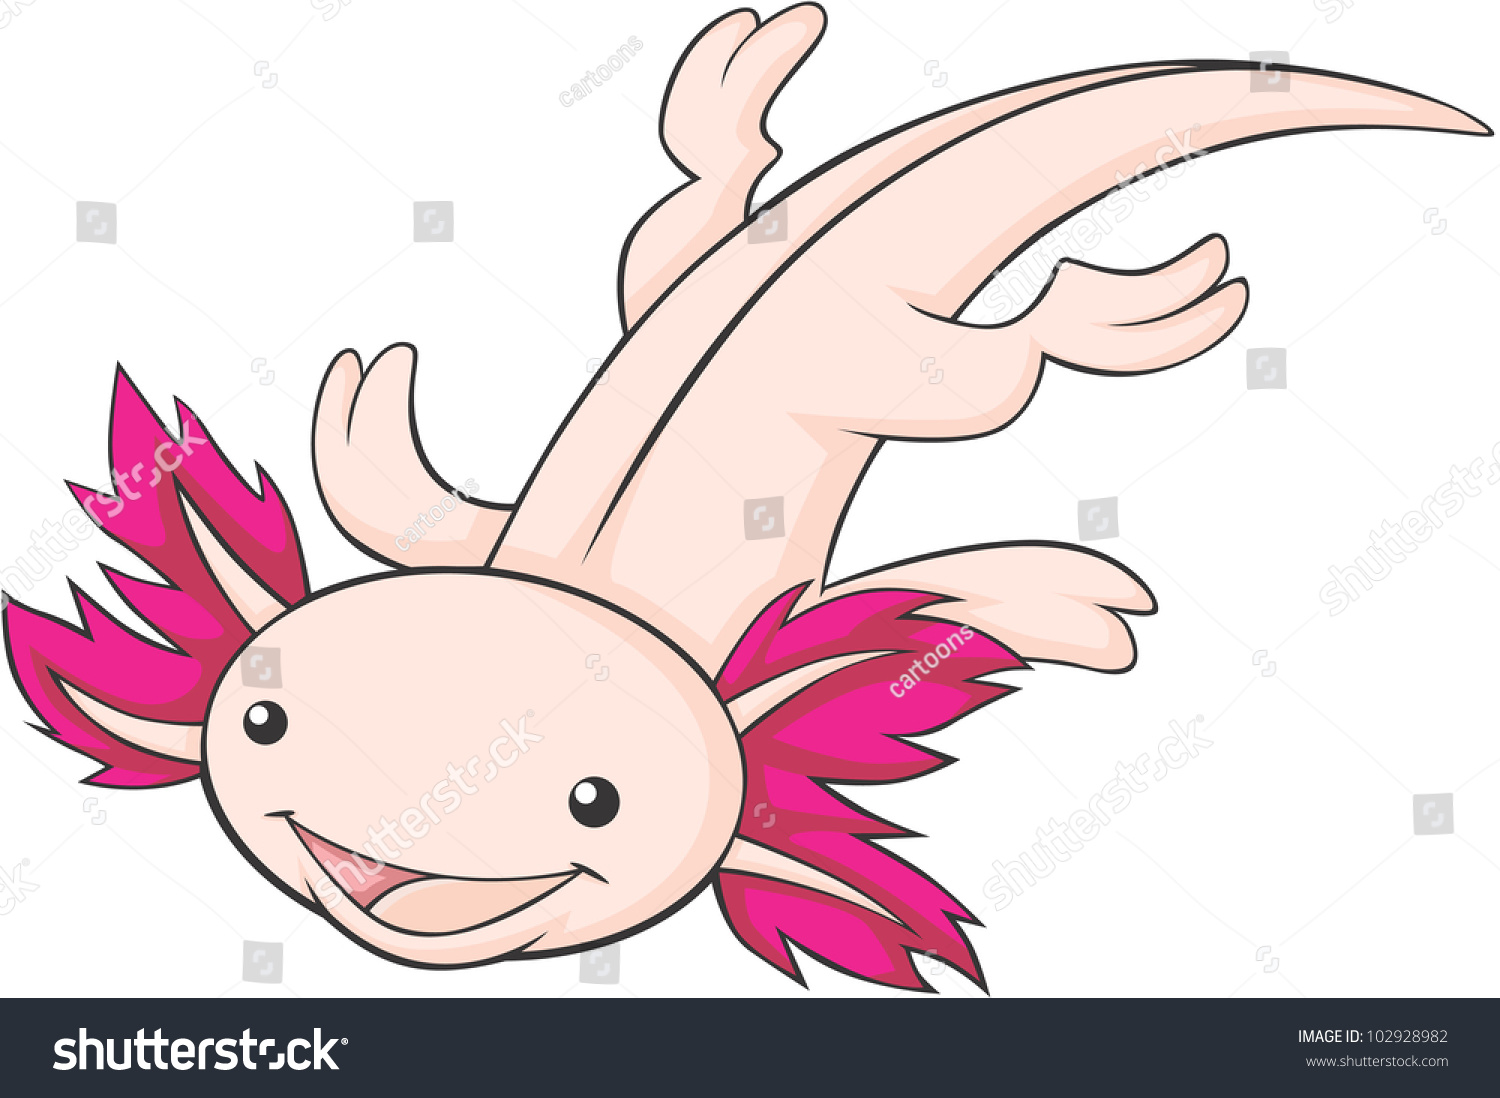 Cute Mexican Axolotl Cartoon Vectores en stock 102928982 : Shutterstock